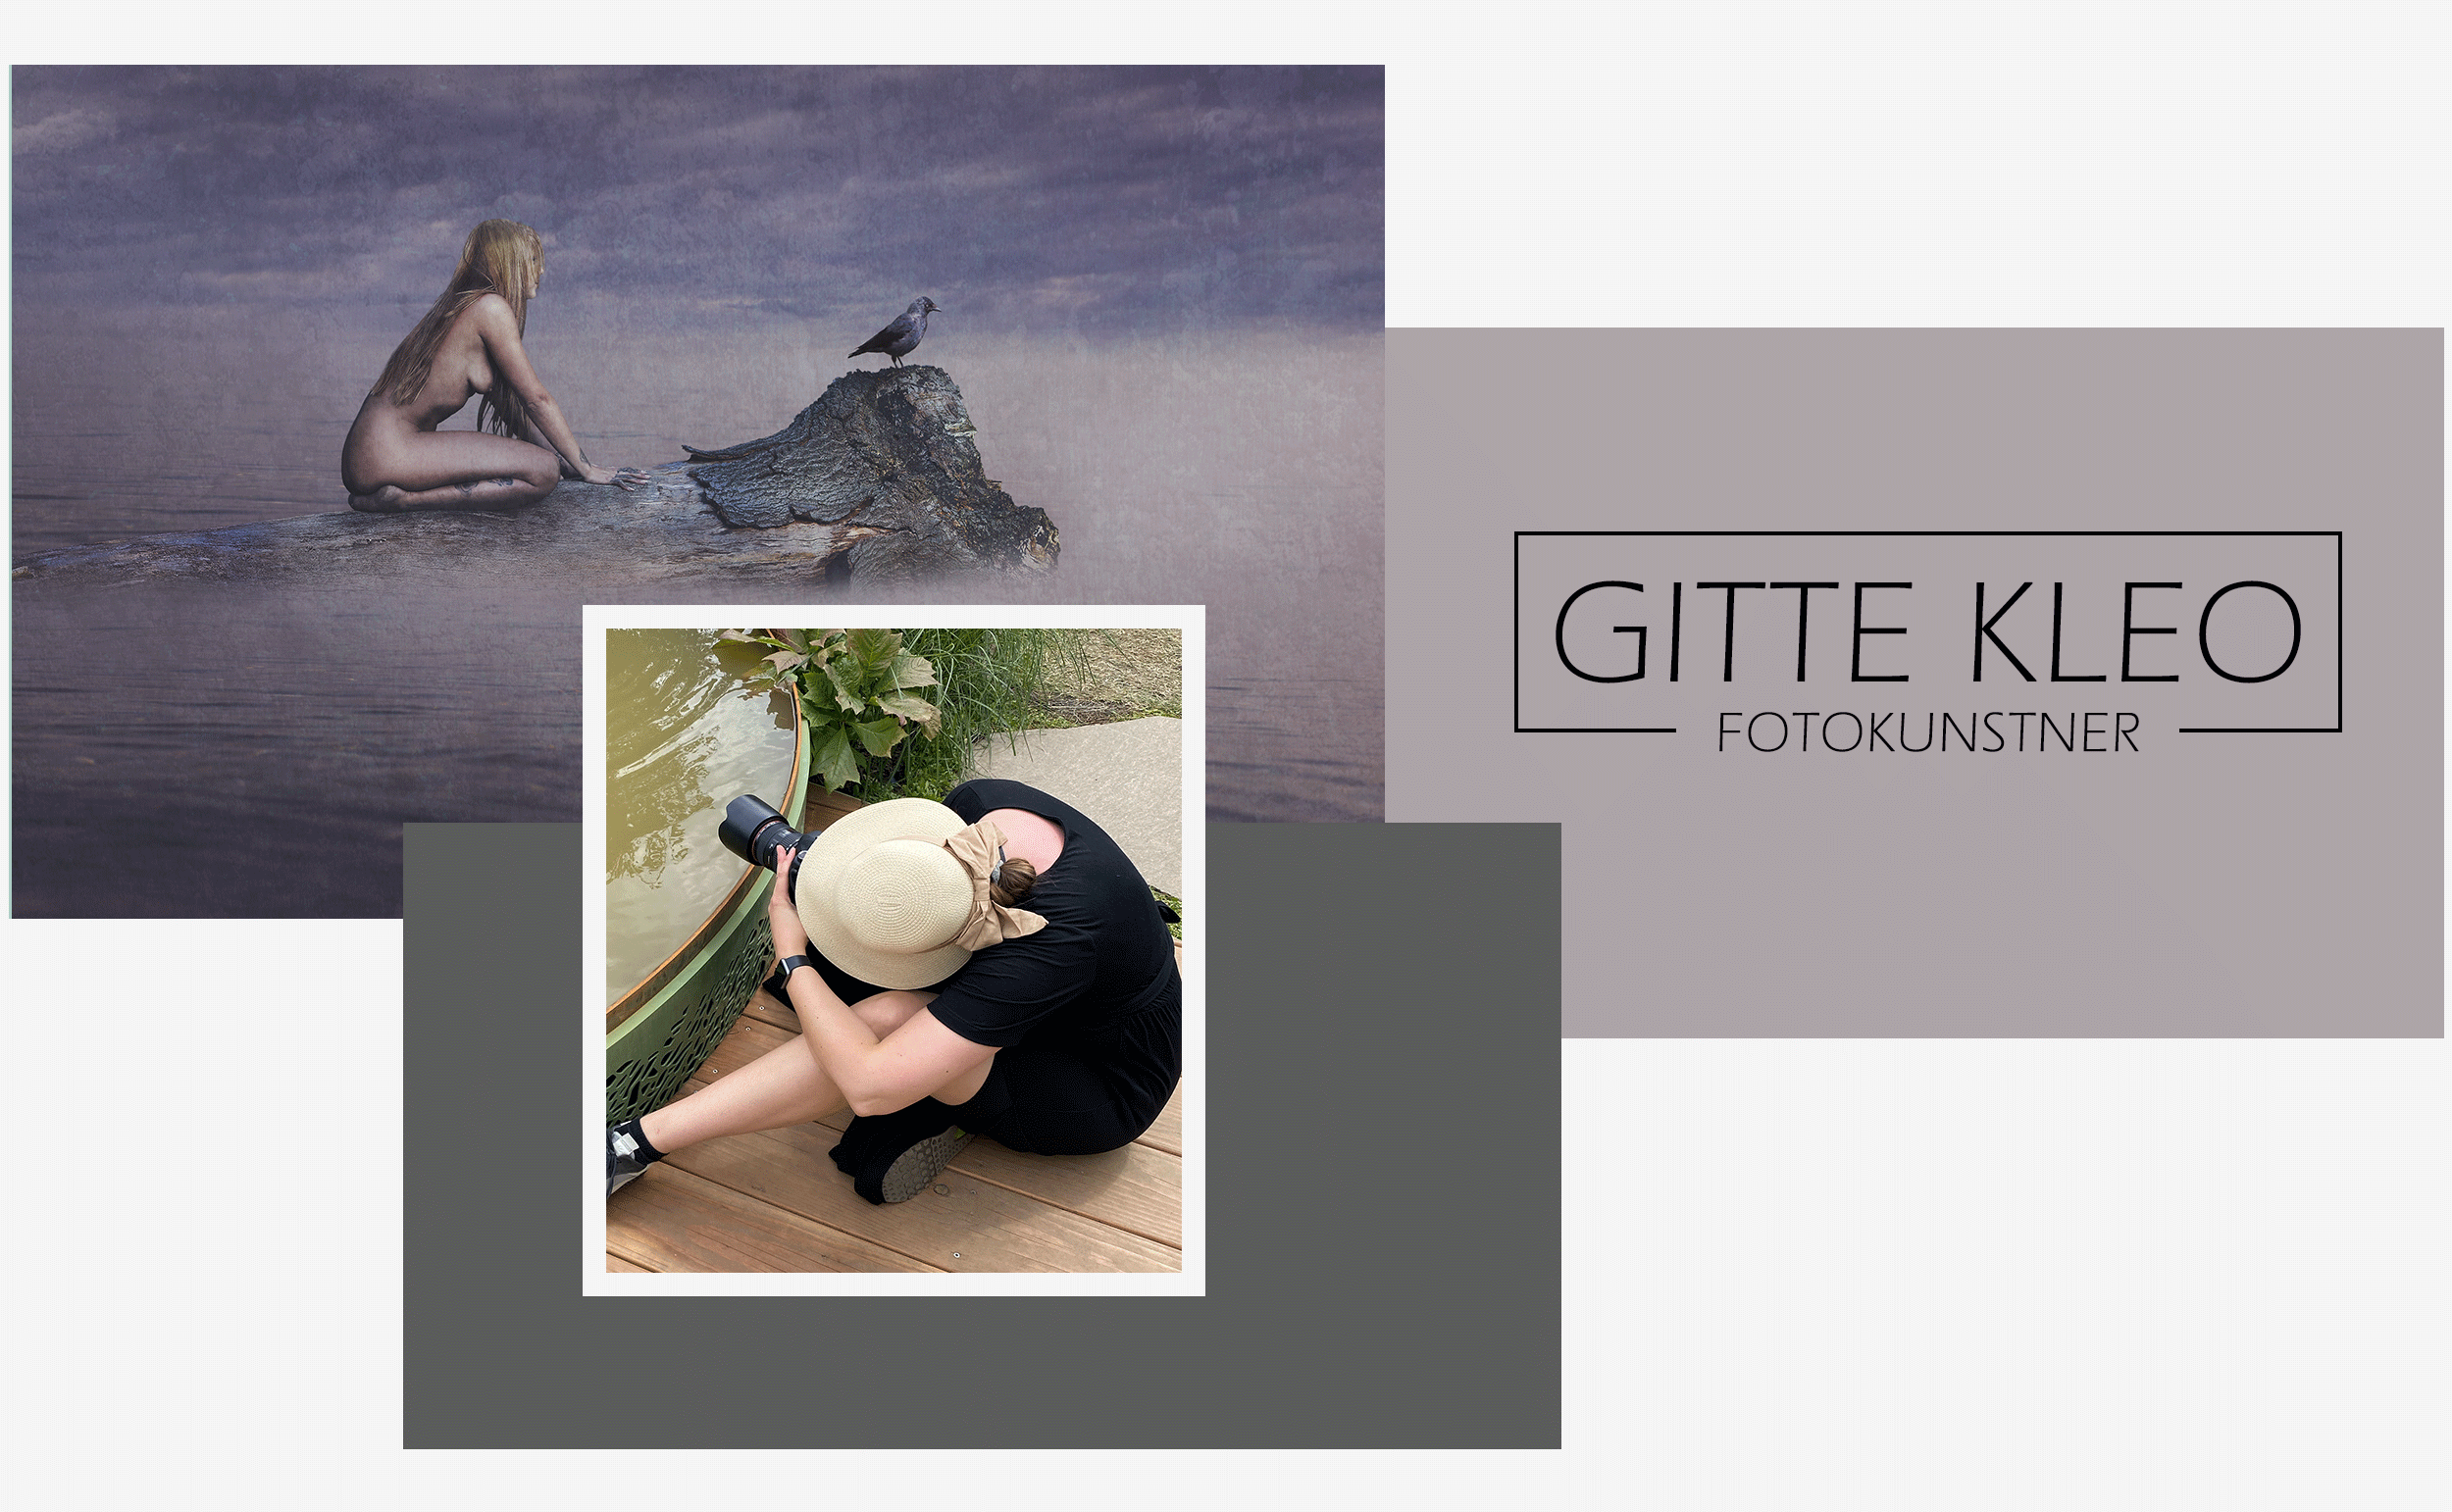 Gitte Kleo fotokunstner